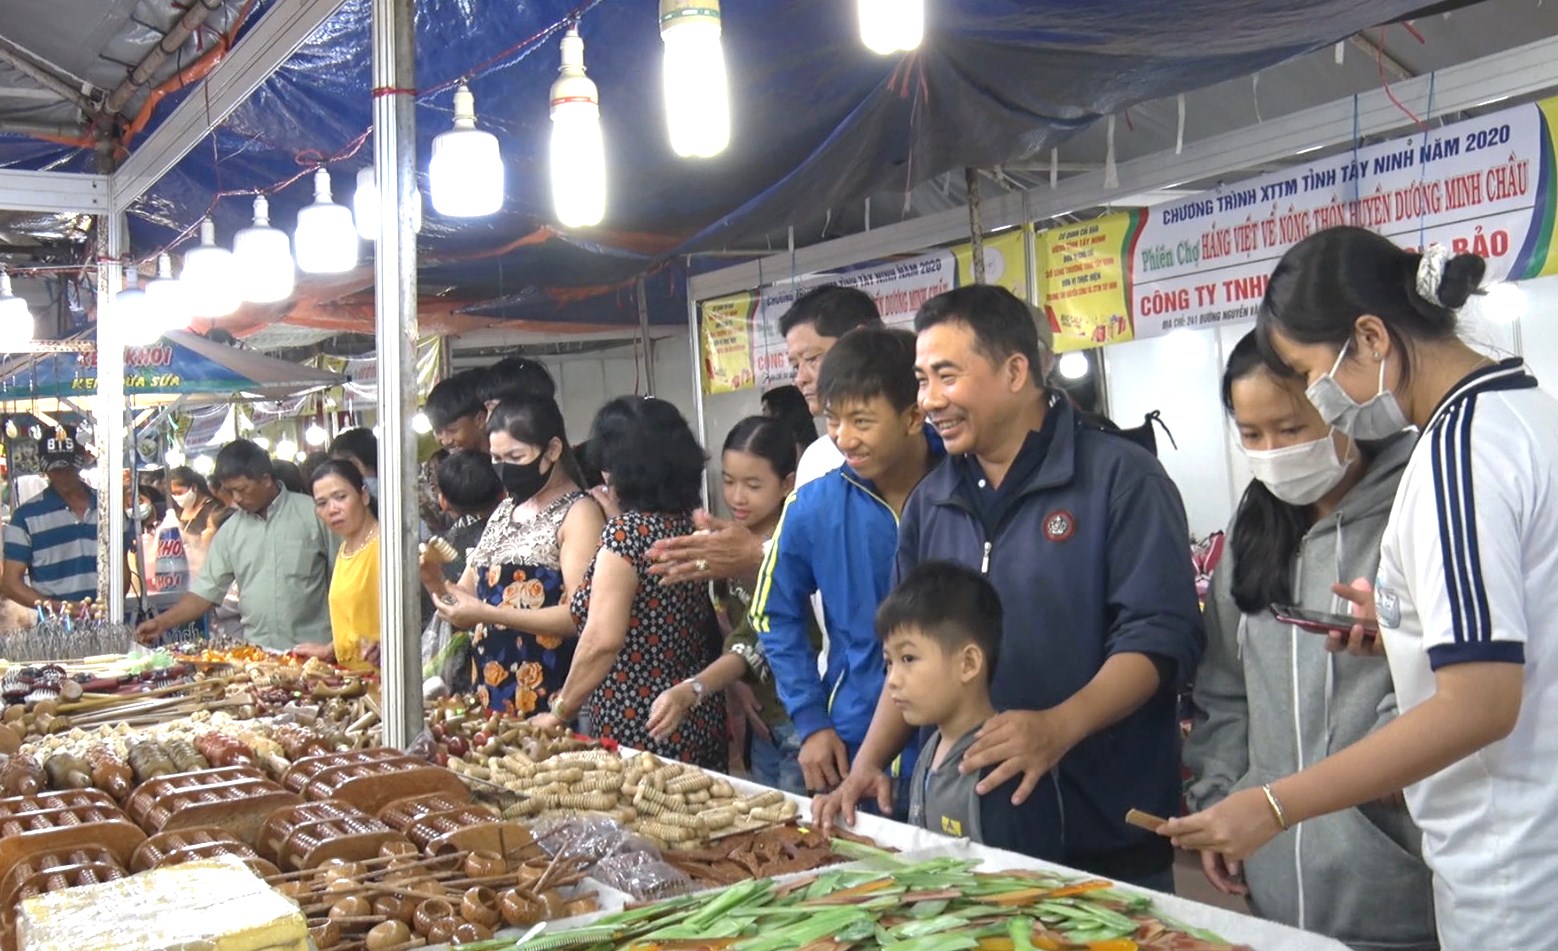 Huyện Dương Minh Châu: Phiên chợ hàng Việt về nông thôn năm 2020